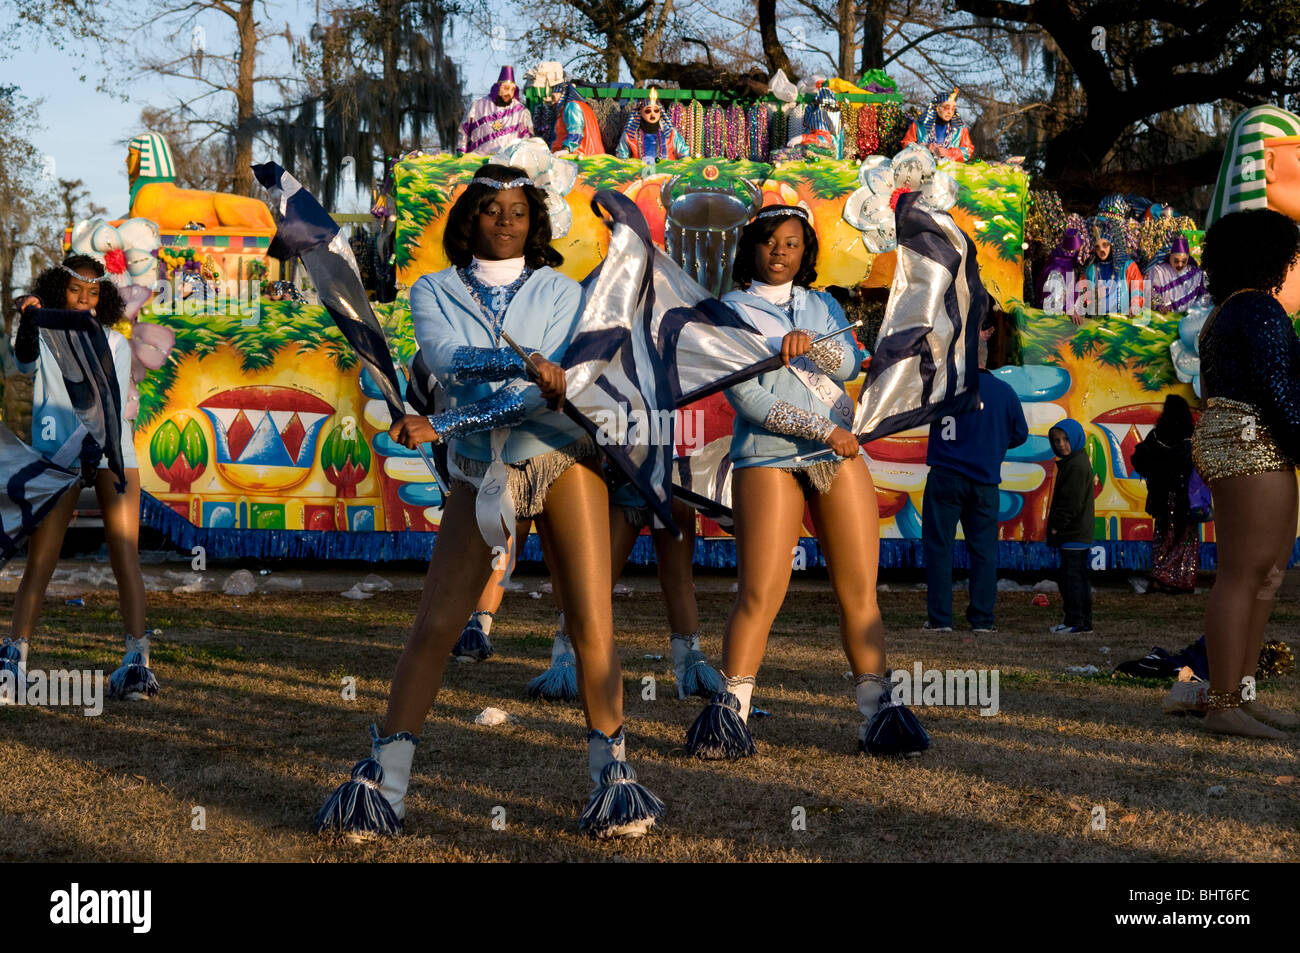 Flag twirlers, Endymion, Mardi Gras, New Orleans, Louisiana Stock Photo